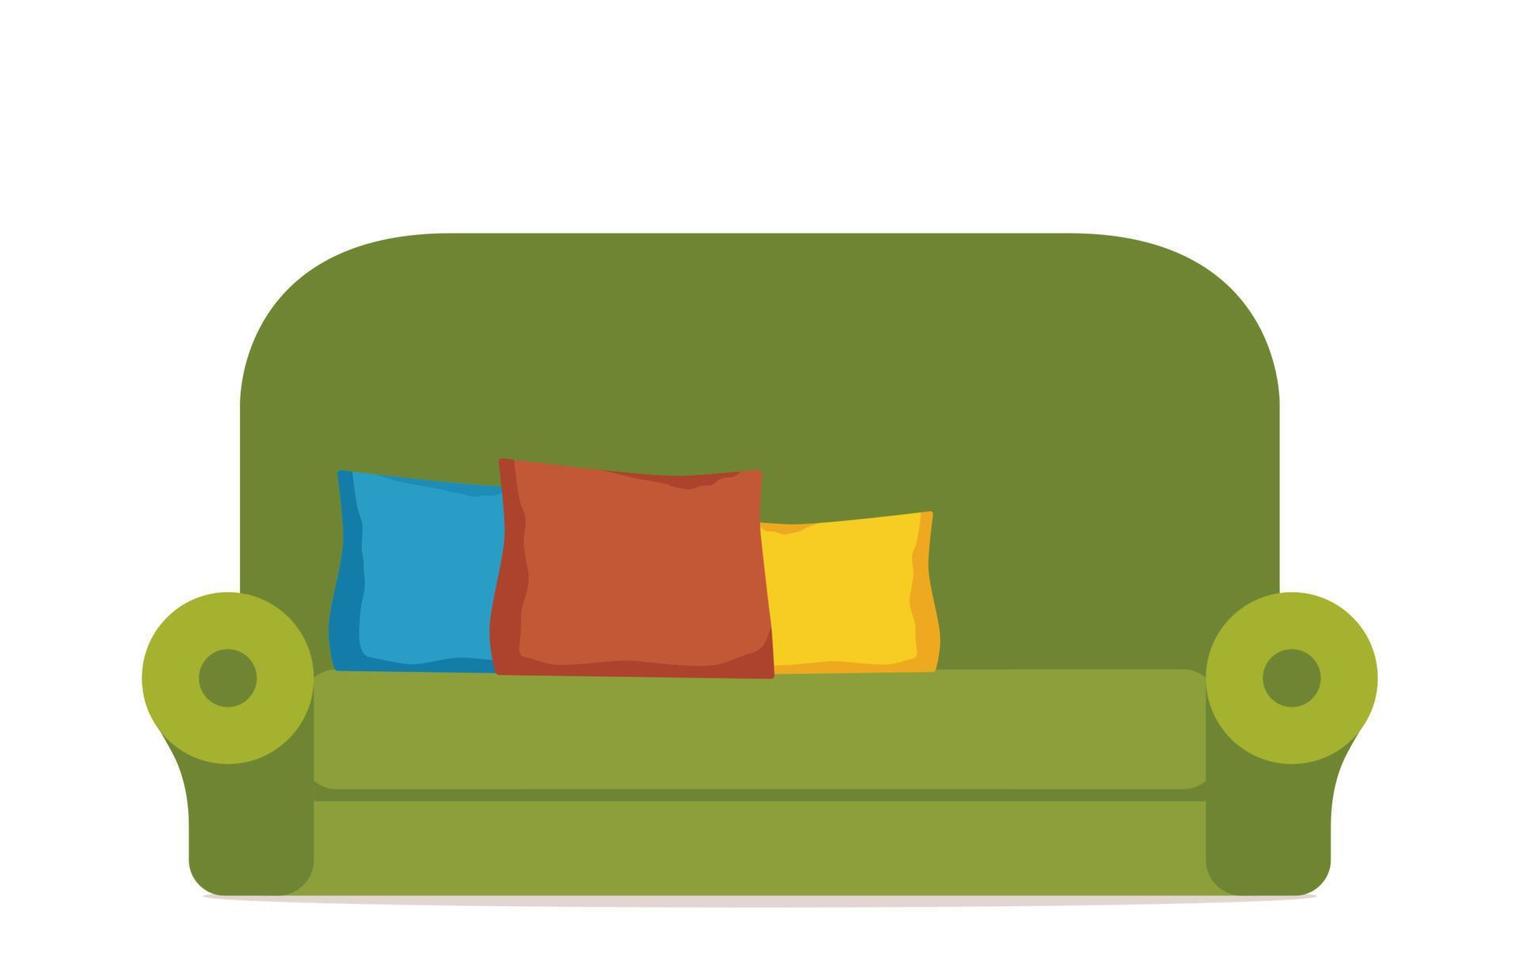 mysigt grön soffa med färgrik kuddar. bekväm soffa. möbel för levande rum. mjuk sittplats. färgrik platt vektor illustration isolerat på vit bakgrund.